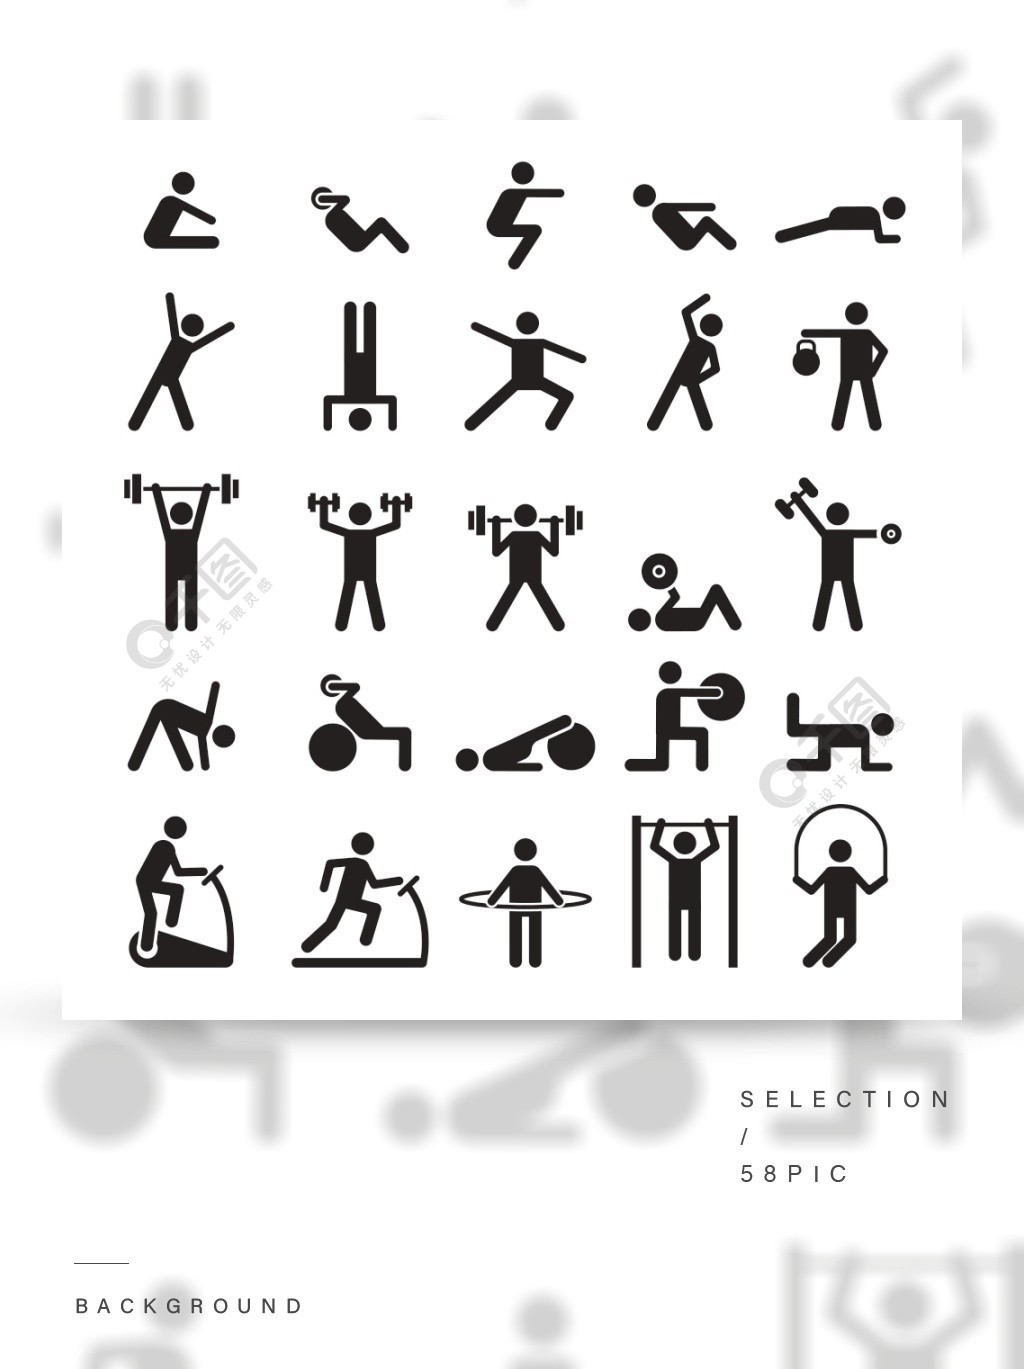 体育锻炼训练插图健身象形图做运动的人物运动人物矢量图标和符号